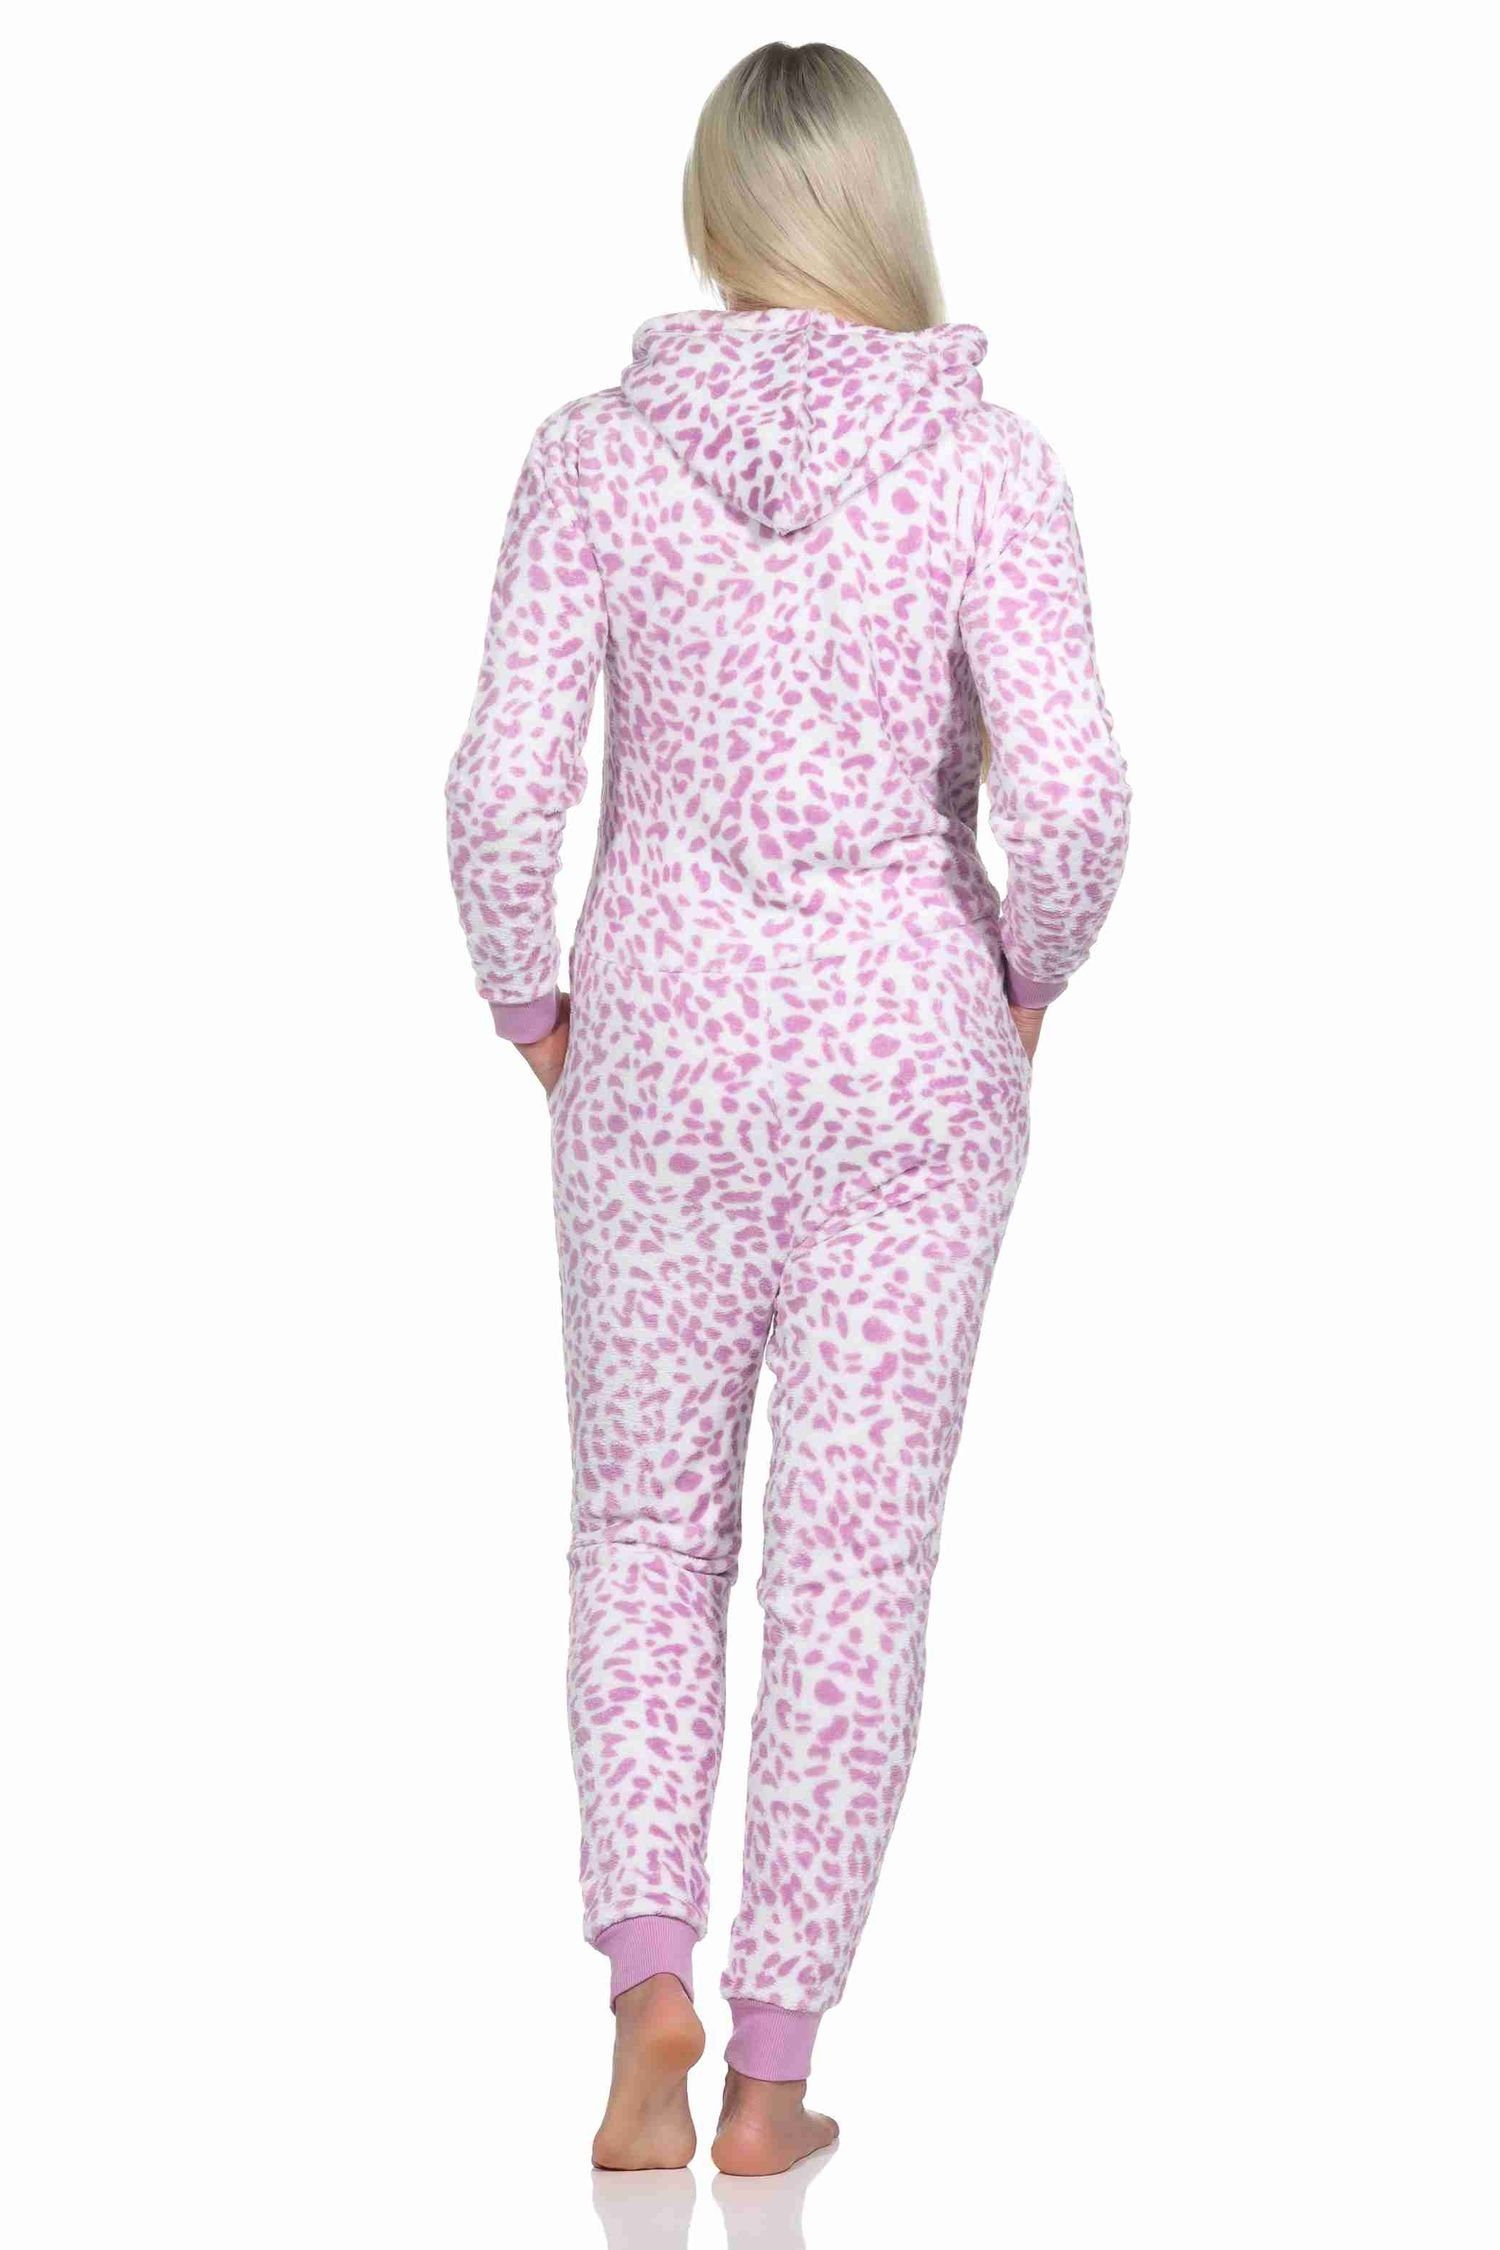 Coralfleece Pyjama Overall aus pink Jumpsuit Schlafanzug Einteiler Normann Damen